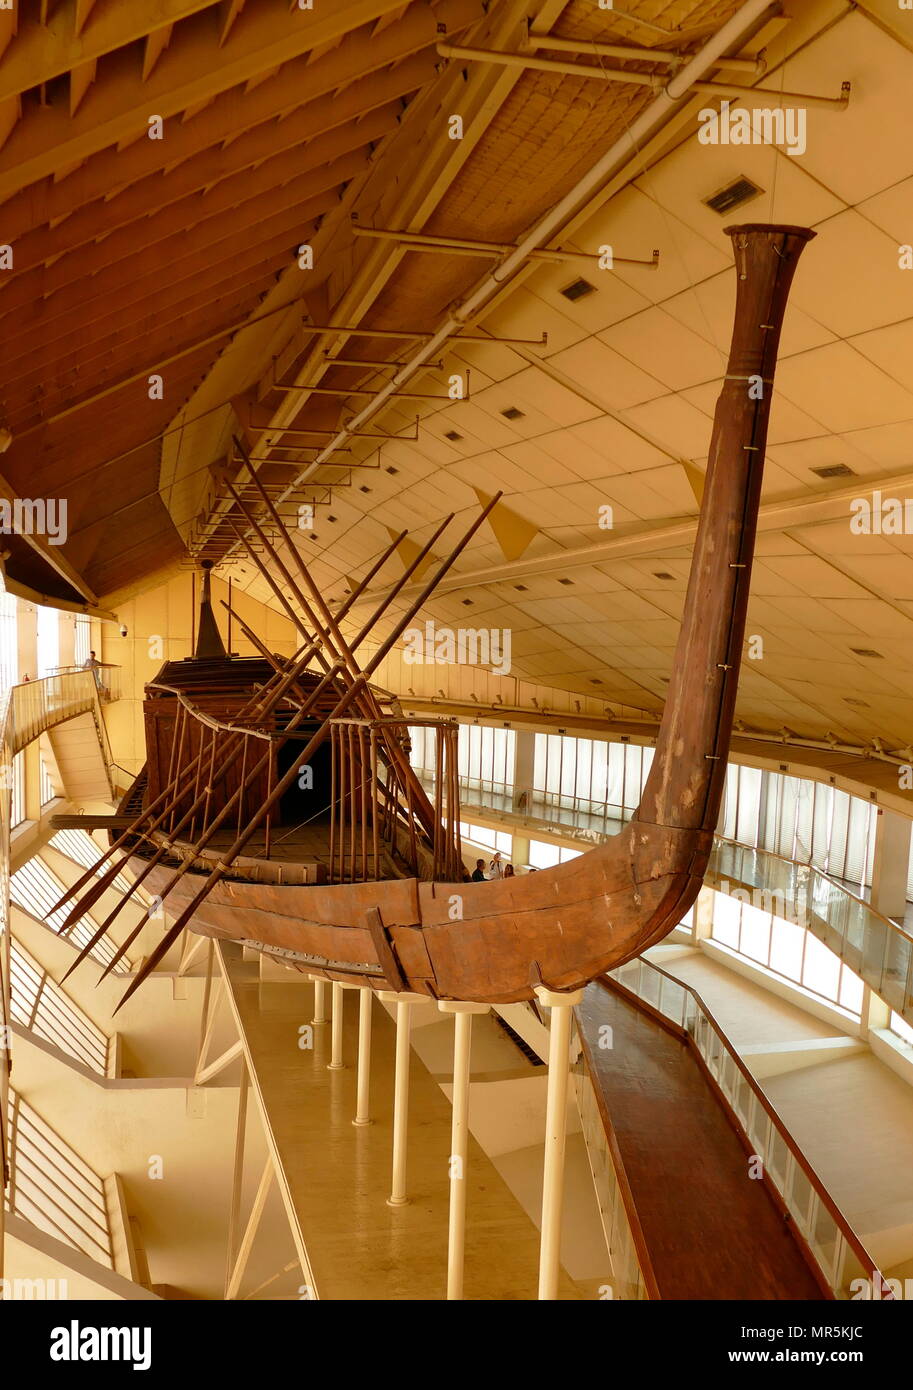 Le bateau, Khufu (énergie solaire), navire de l'ancienne Egypte, a été scellée dans une fosse dans la pyramide de Gizeh, complexe au pied de la grande pyramide de Gizeh, autour de 2500 avant J.-C.. Le navire est maintenant conservé dans le musée de bateau solaire Gizeh. Le navire était presque certainement construit pour le Roi Khufu (CHEOPS), le deuxième pharaon de la Ive dynastie de l'ancien royaume d'Égypte. Banque D'Images